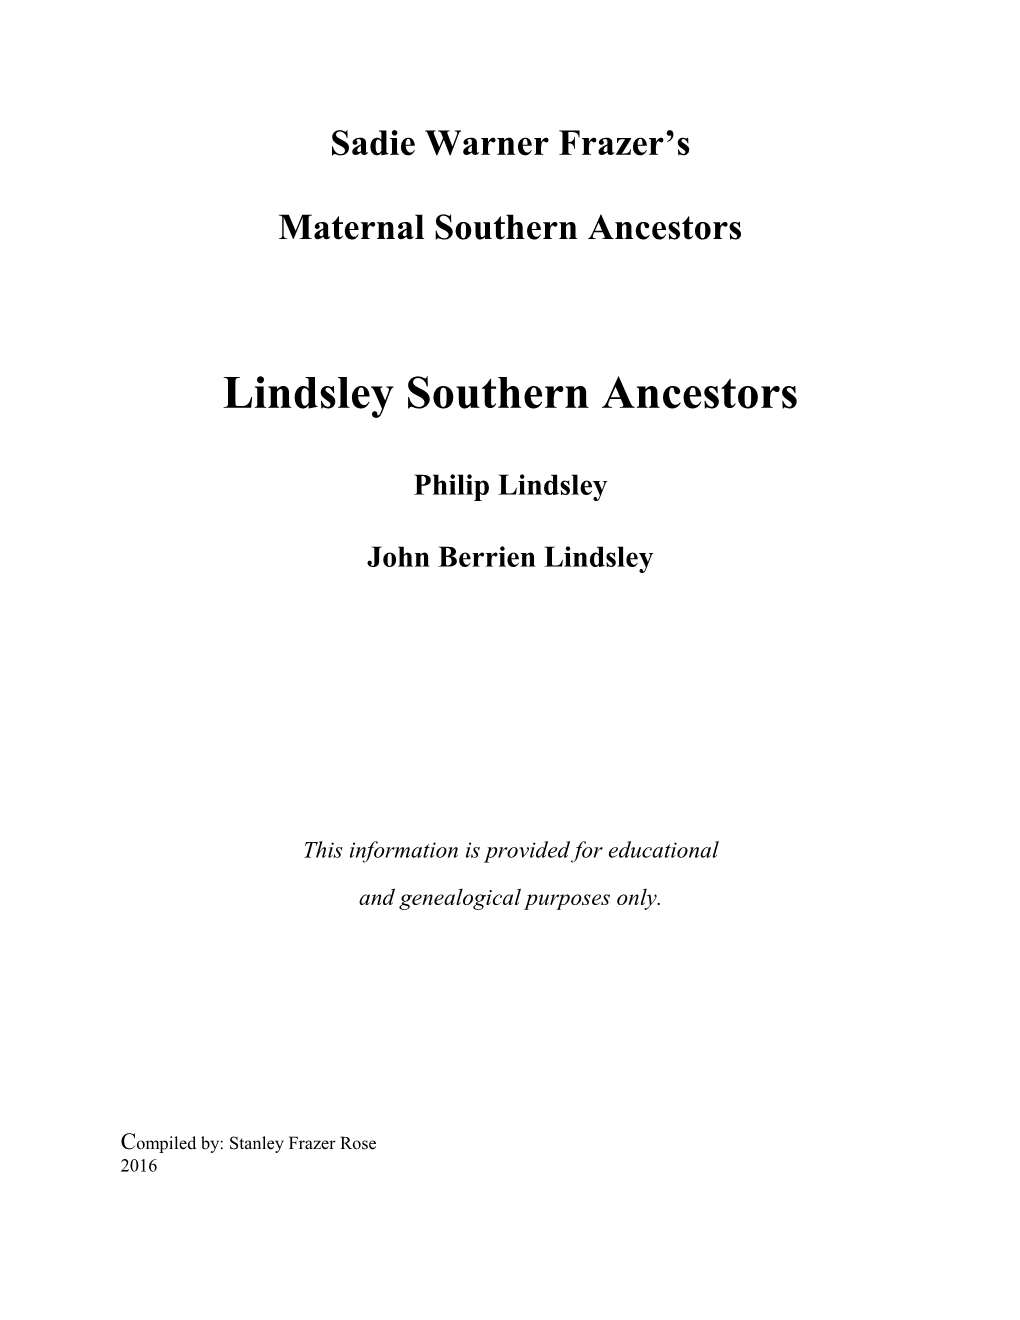 Lindsley Southern Ancestors